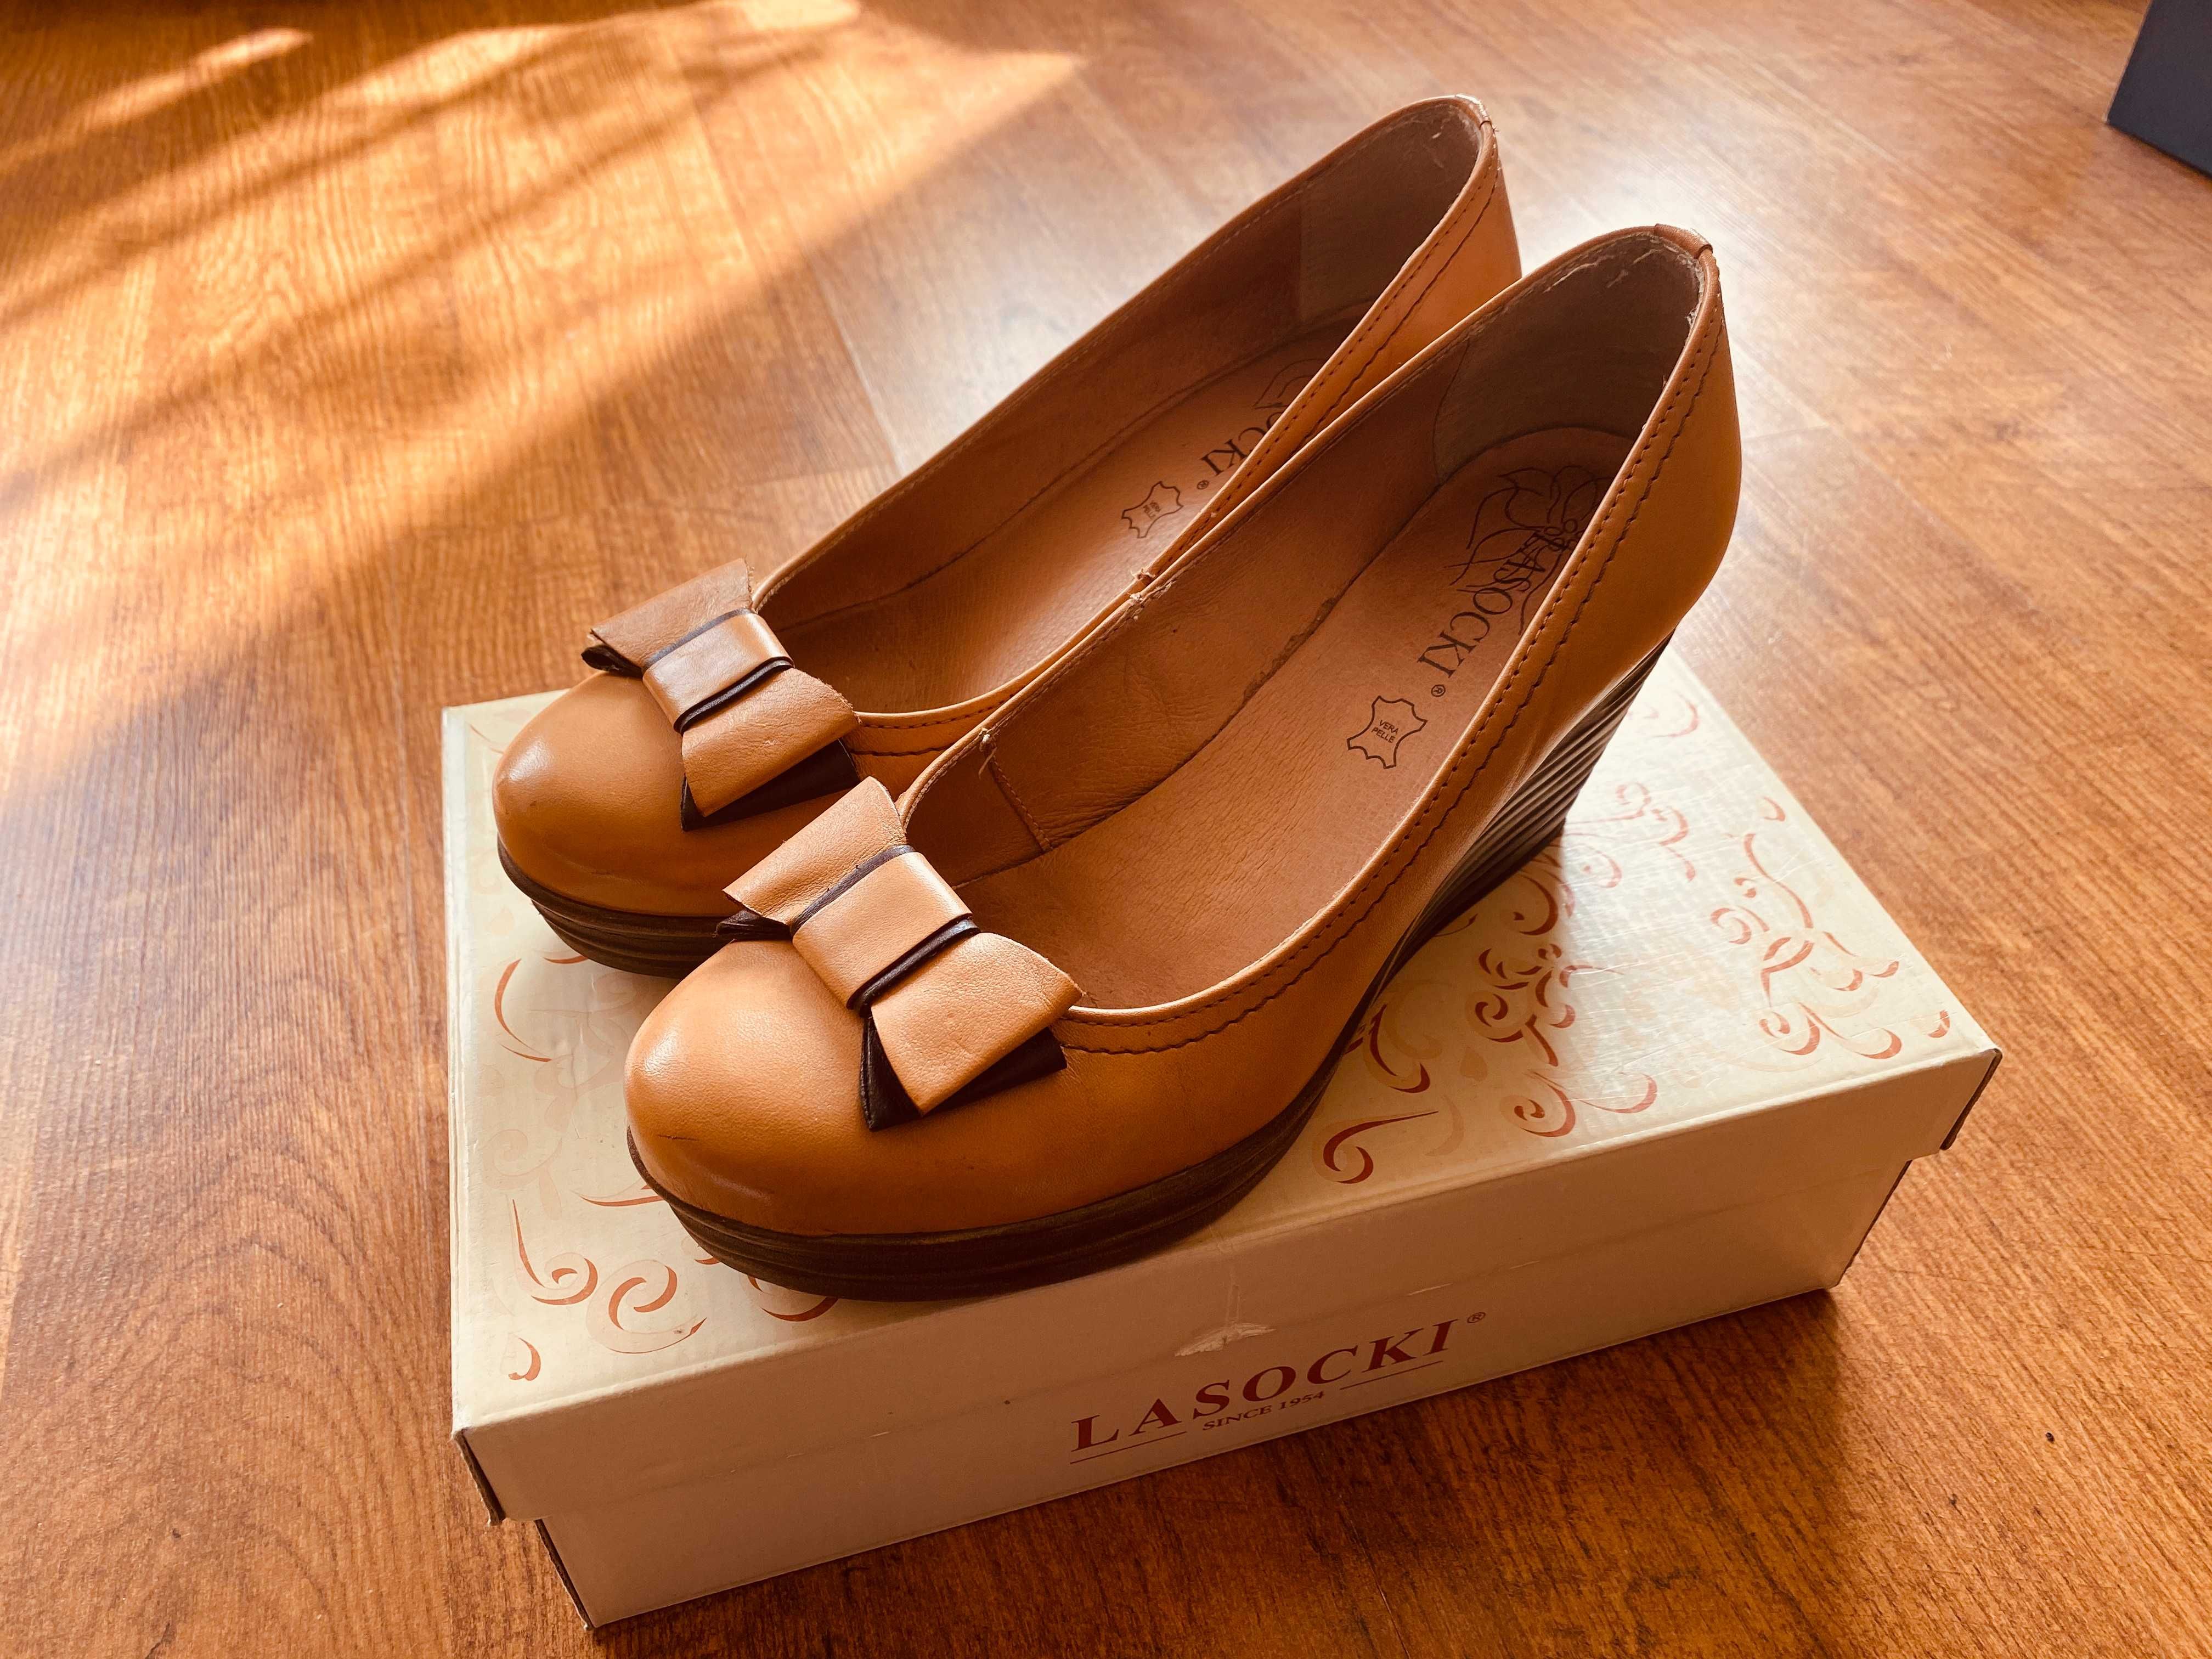 Skórzane buty damskie - Lasocki (rozmiar 39)